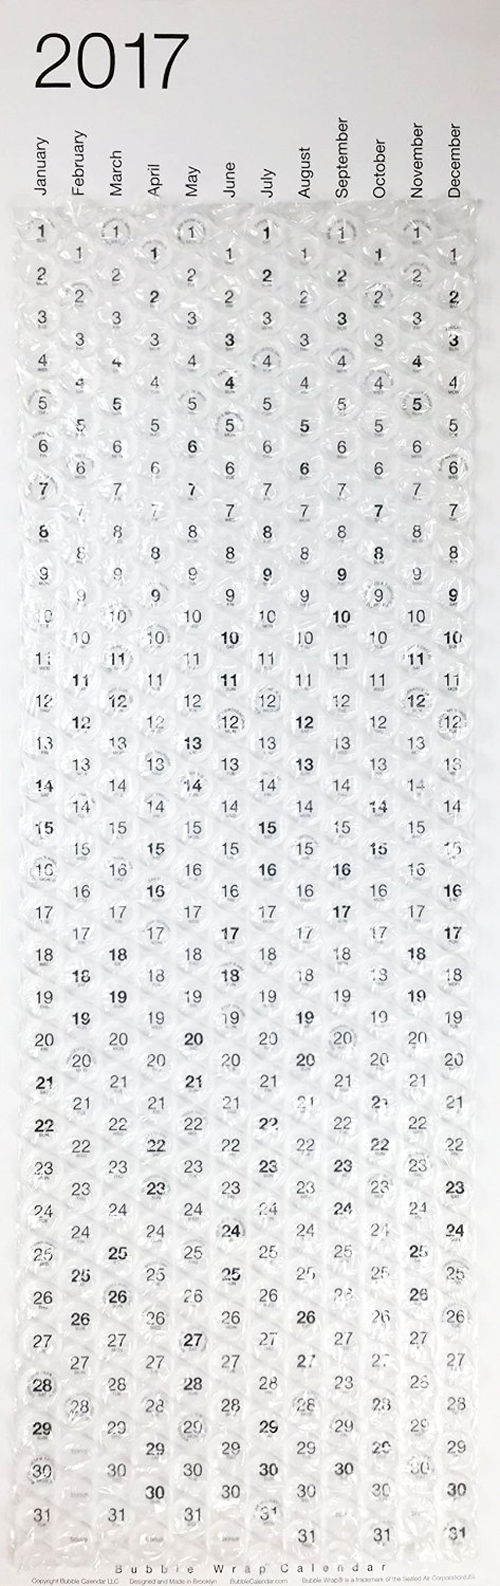 bubble-wrap-wall-calendar-2017